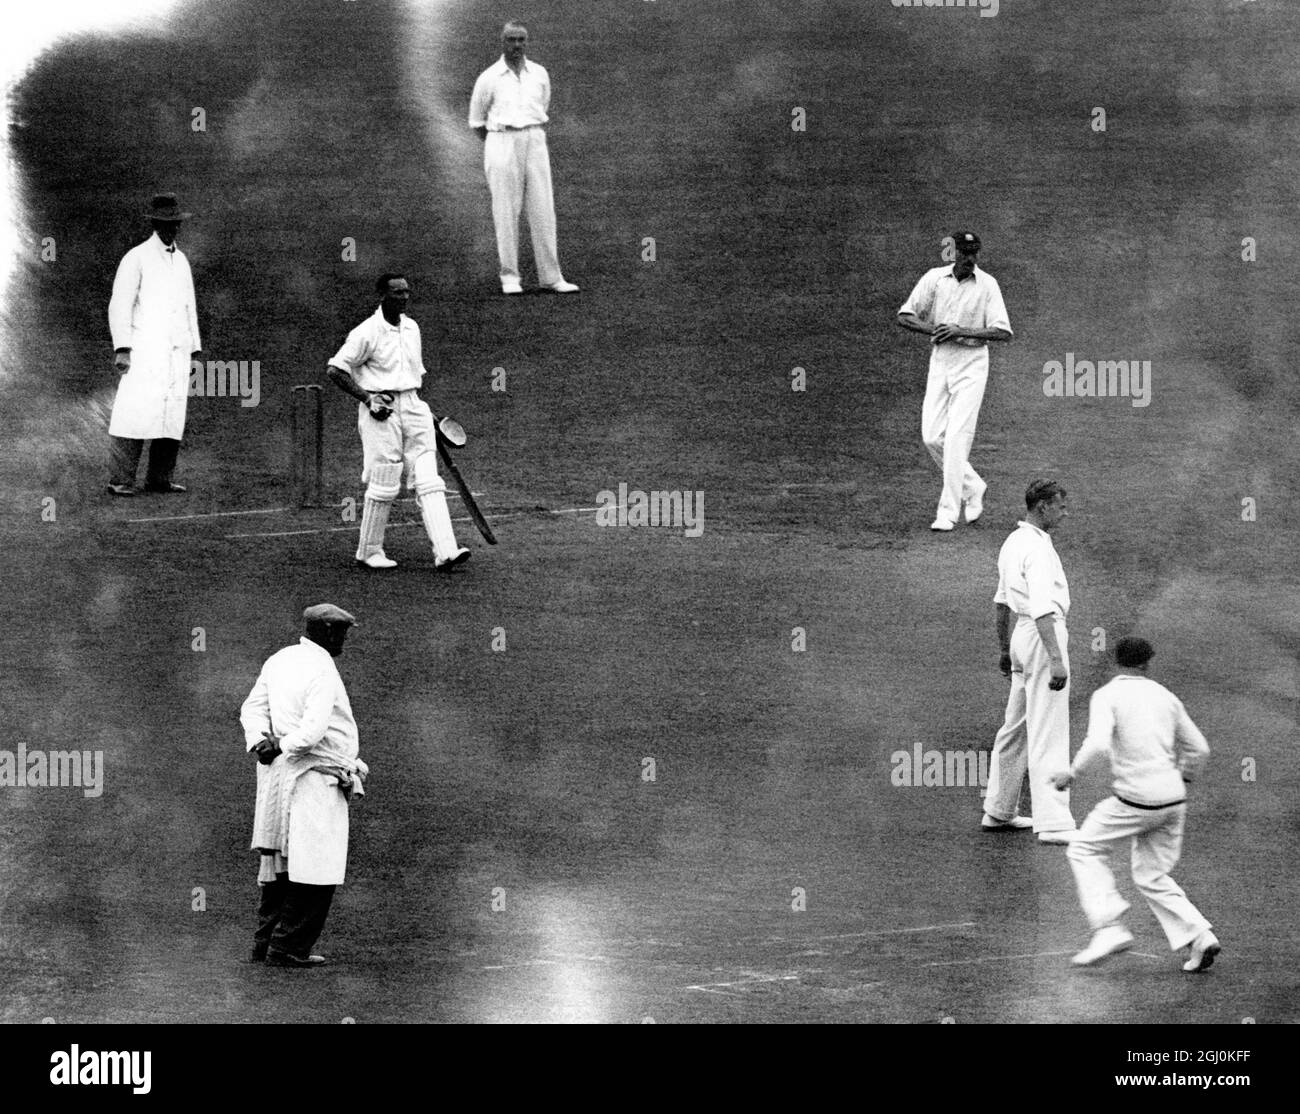 County Cricket, 1930. Surrey gegen Middlesex im Oval. J.B. Hobbs jubelt, nachdem er W. G. Grace's Rekord von 54,896 Läufen in erstklassigen Cricket-Spielen besiegt hat. Stockfoto